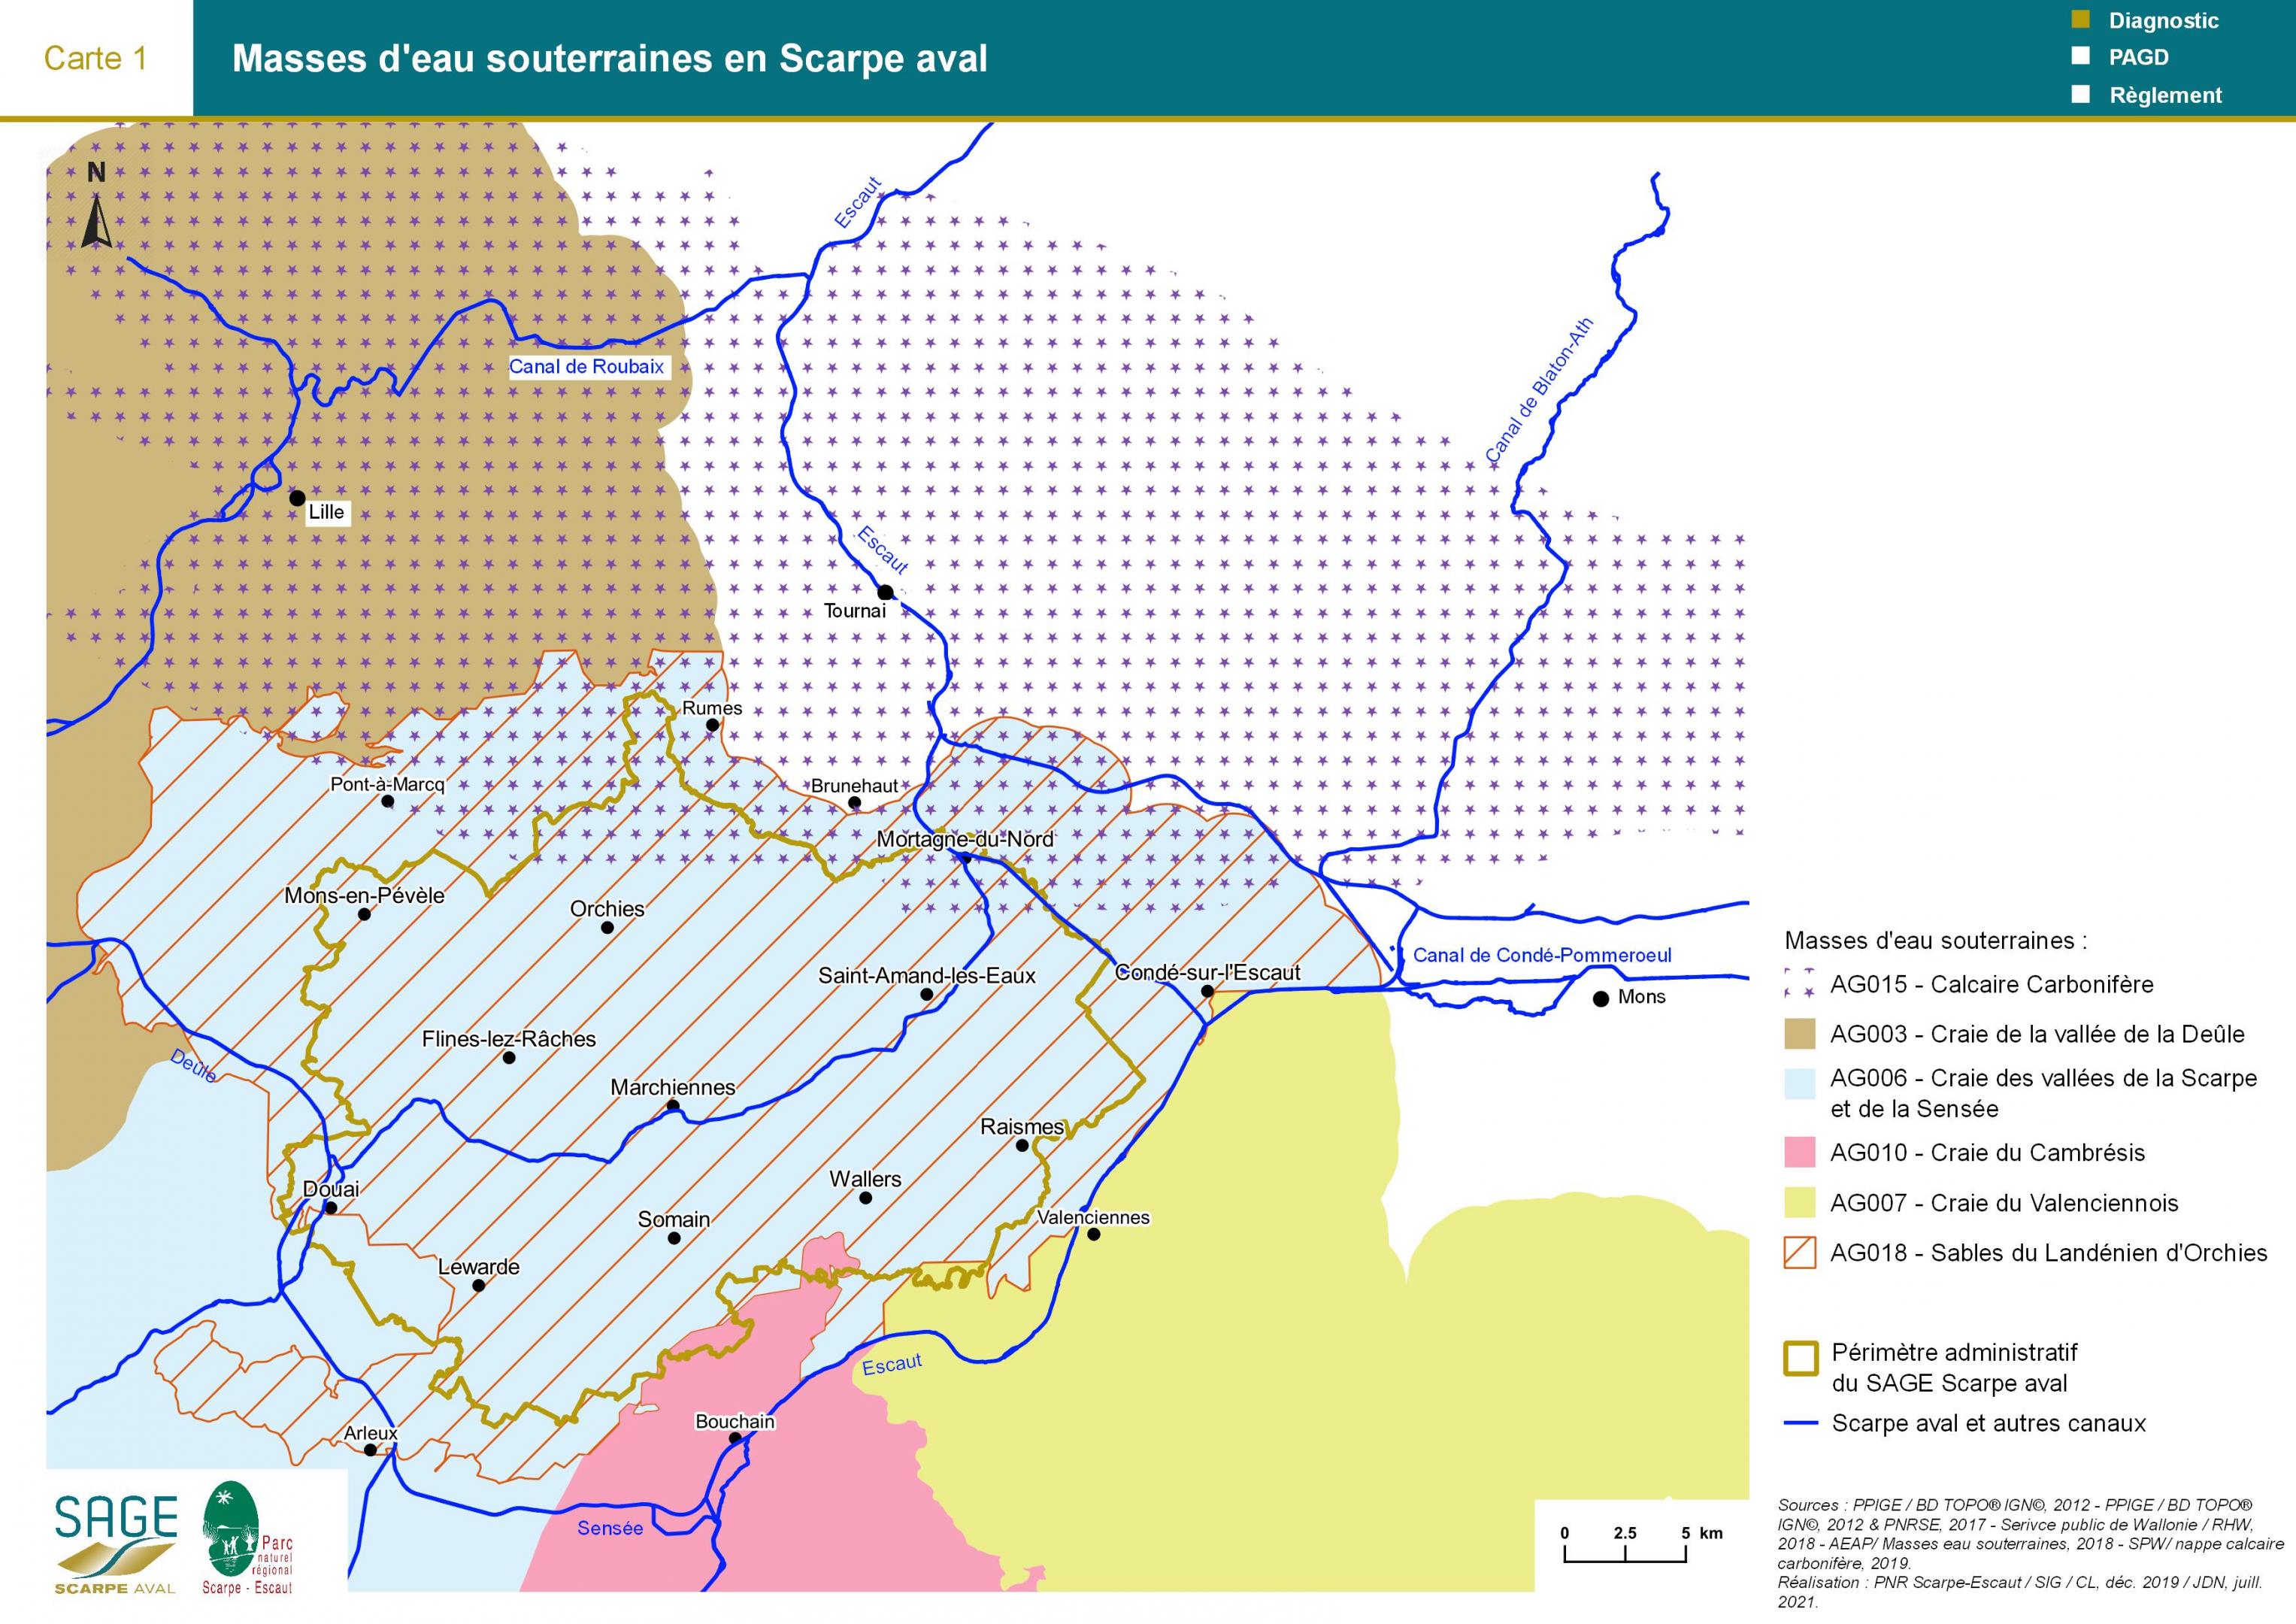 Etat des lieux - Carte 1 : Masses d’eau souterraines en Scarpe aval